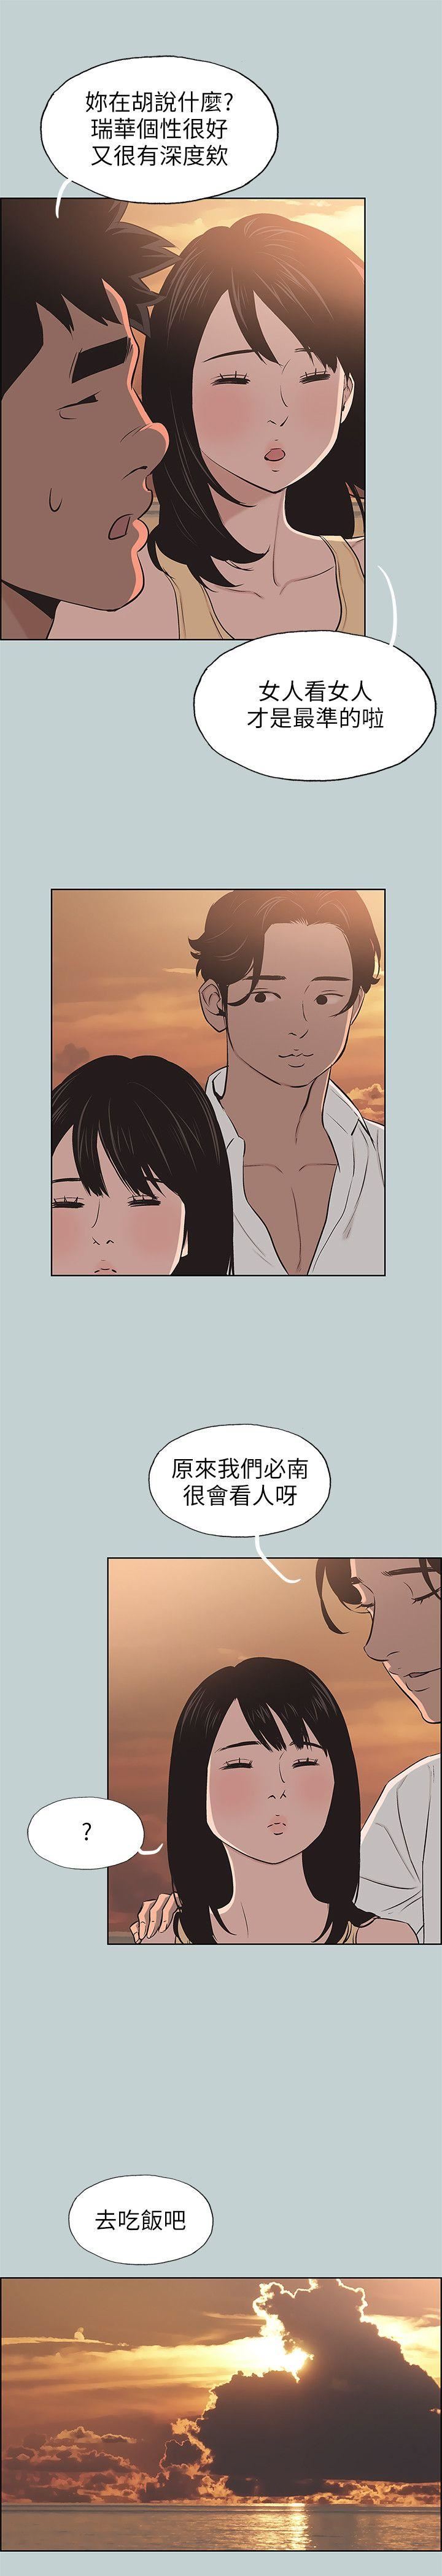 韩国污漫画 愉快的旅行 第104话-未捅先湿 15